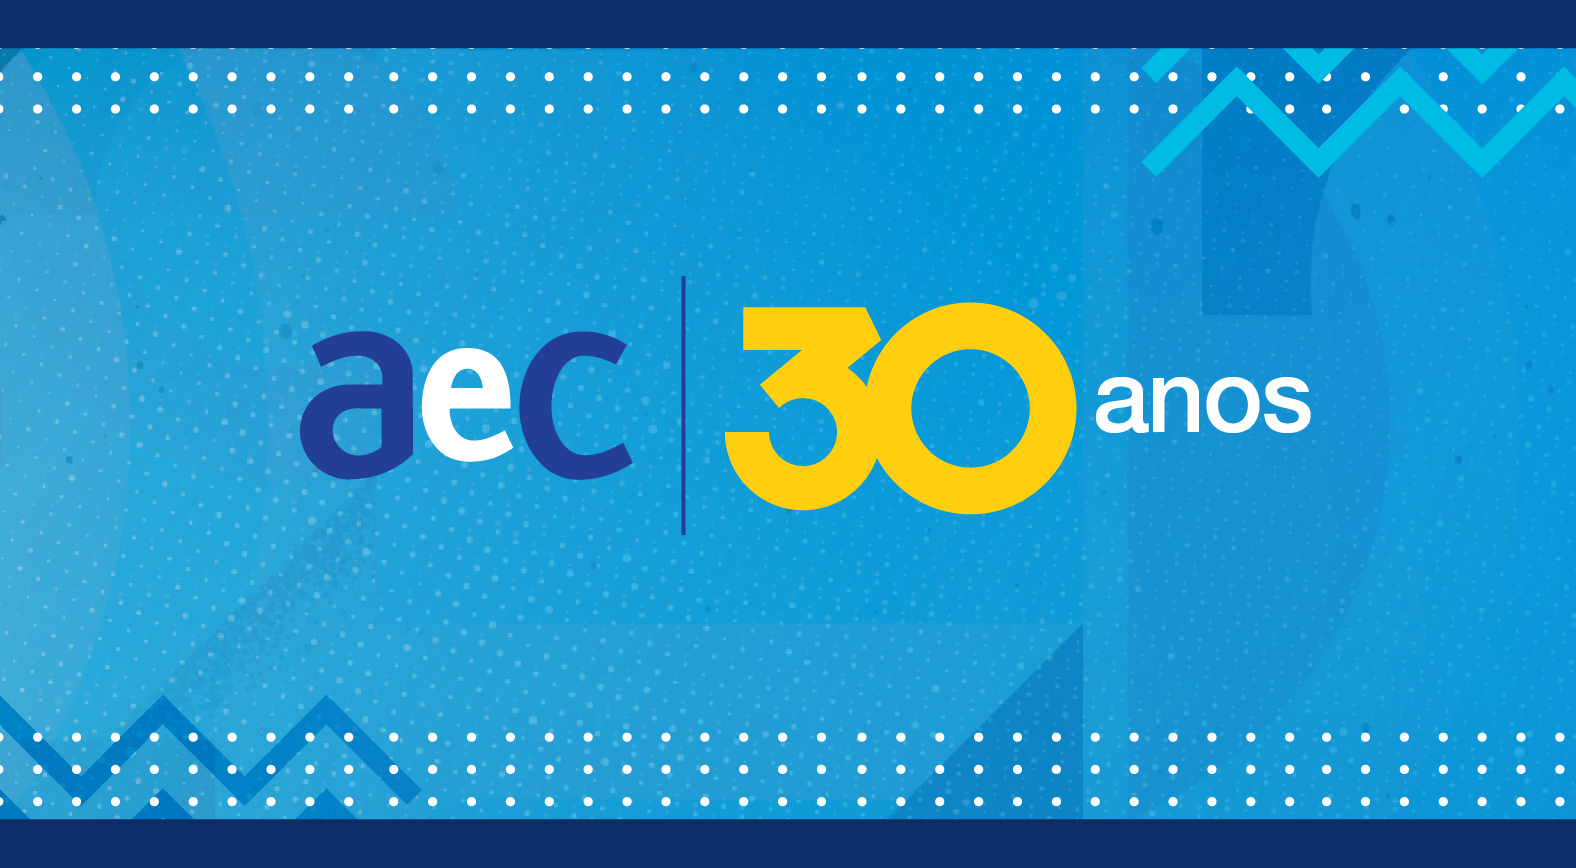 AeC: há 30 anos transformando o futuro - Blog da AeC